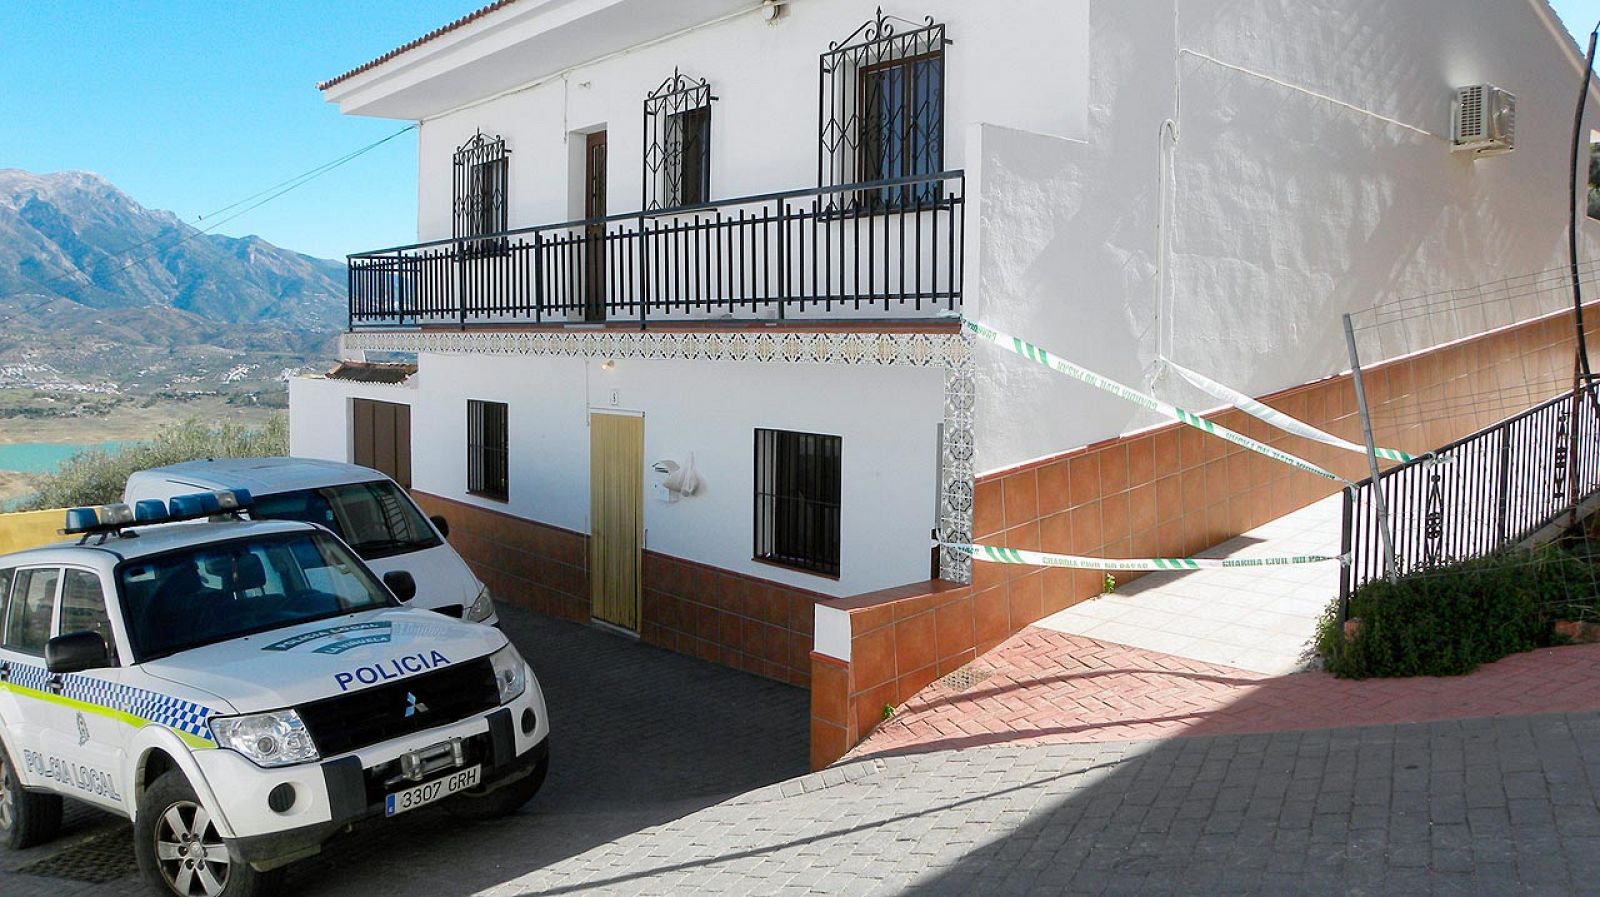 Vivienda en el núcleo poblacional de Los Romanes, de La Viñuela (Málaga), donde ha sido encontrado el cadáver de la víctima